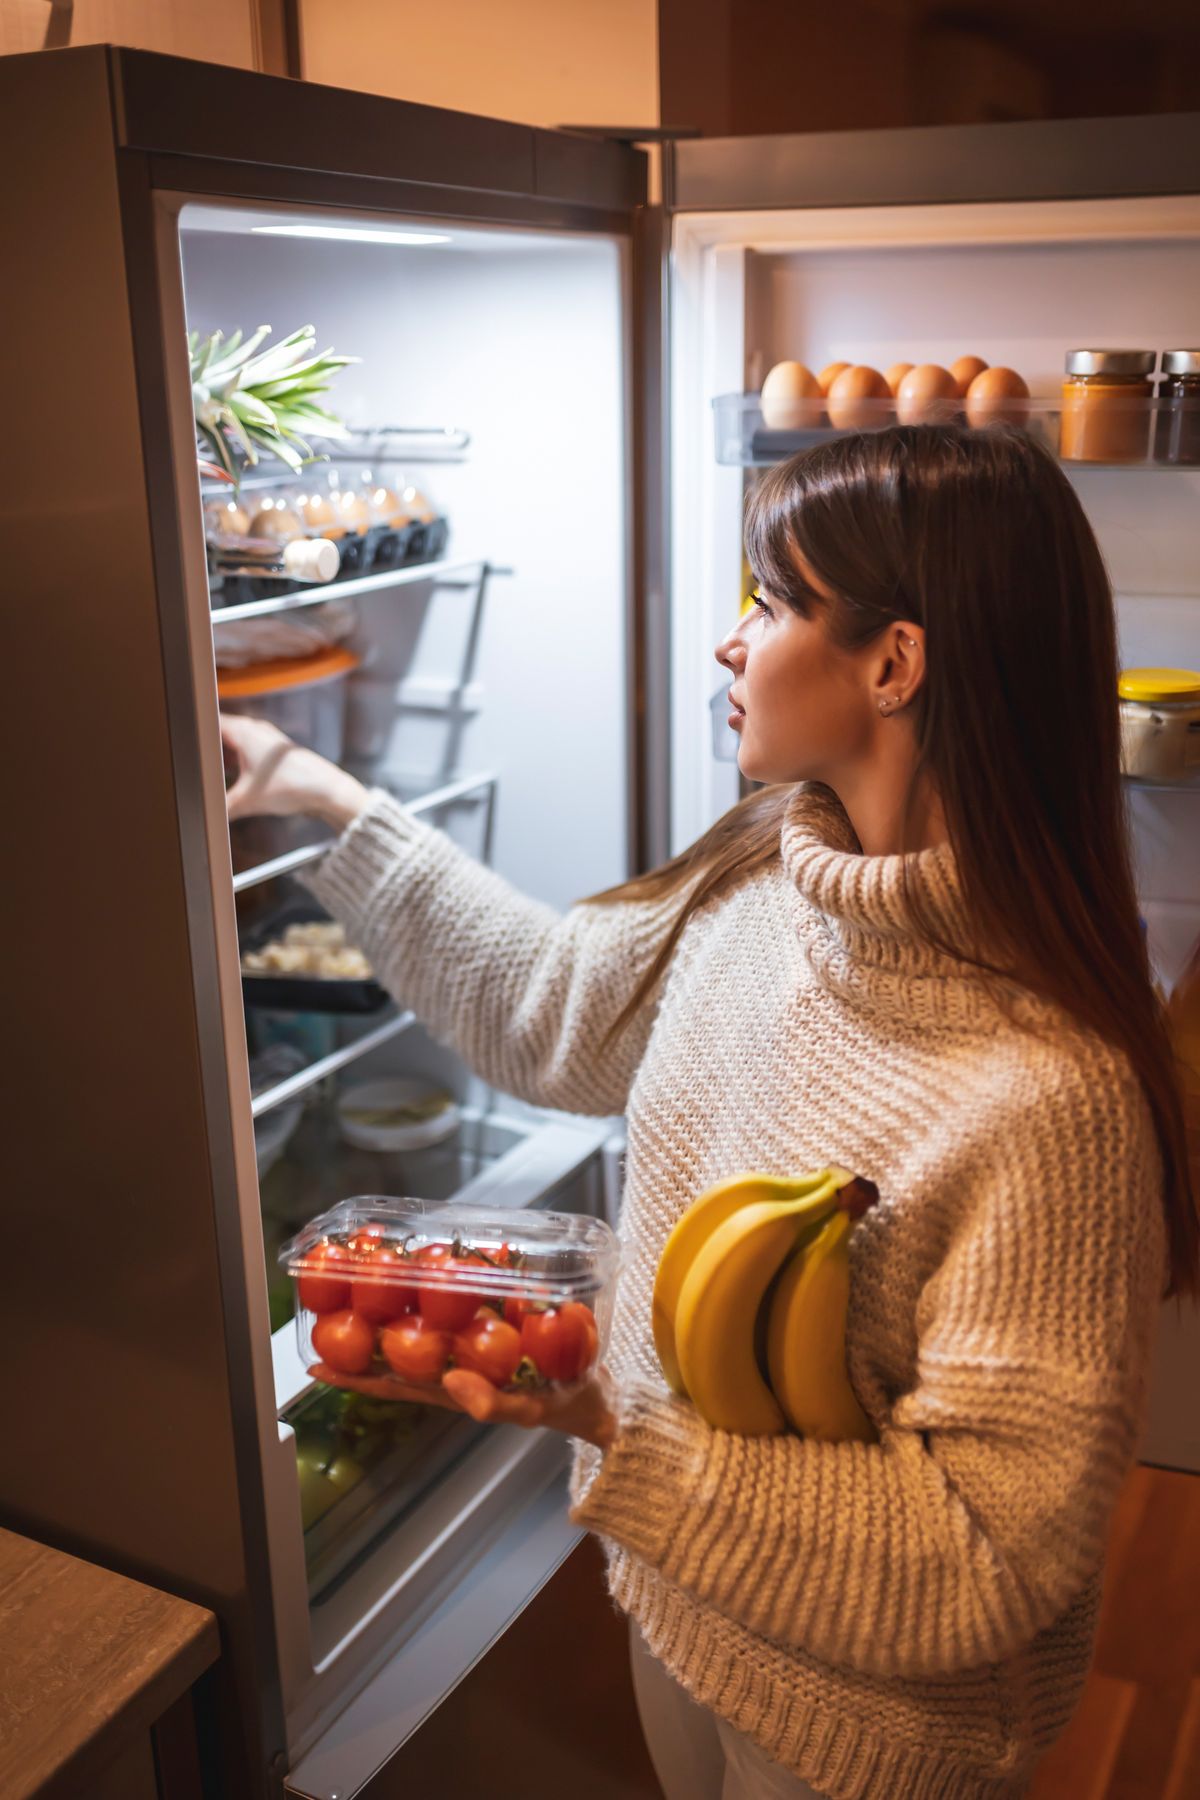 hűtő, hűtőgép, konyha, illusztráció, Shutterstock